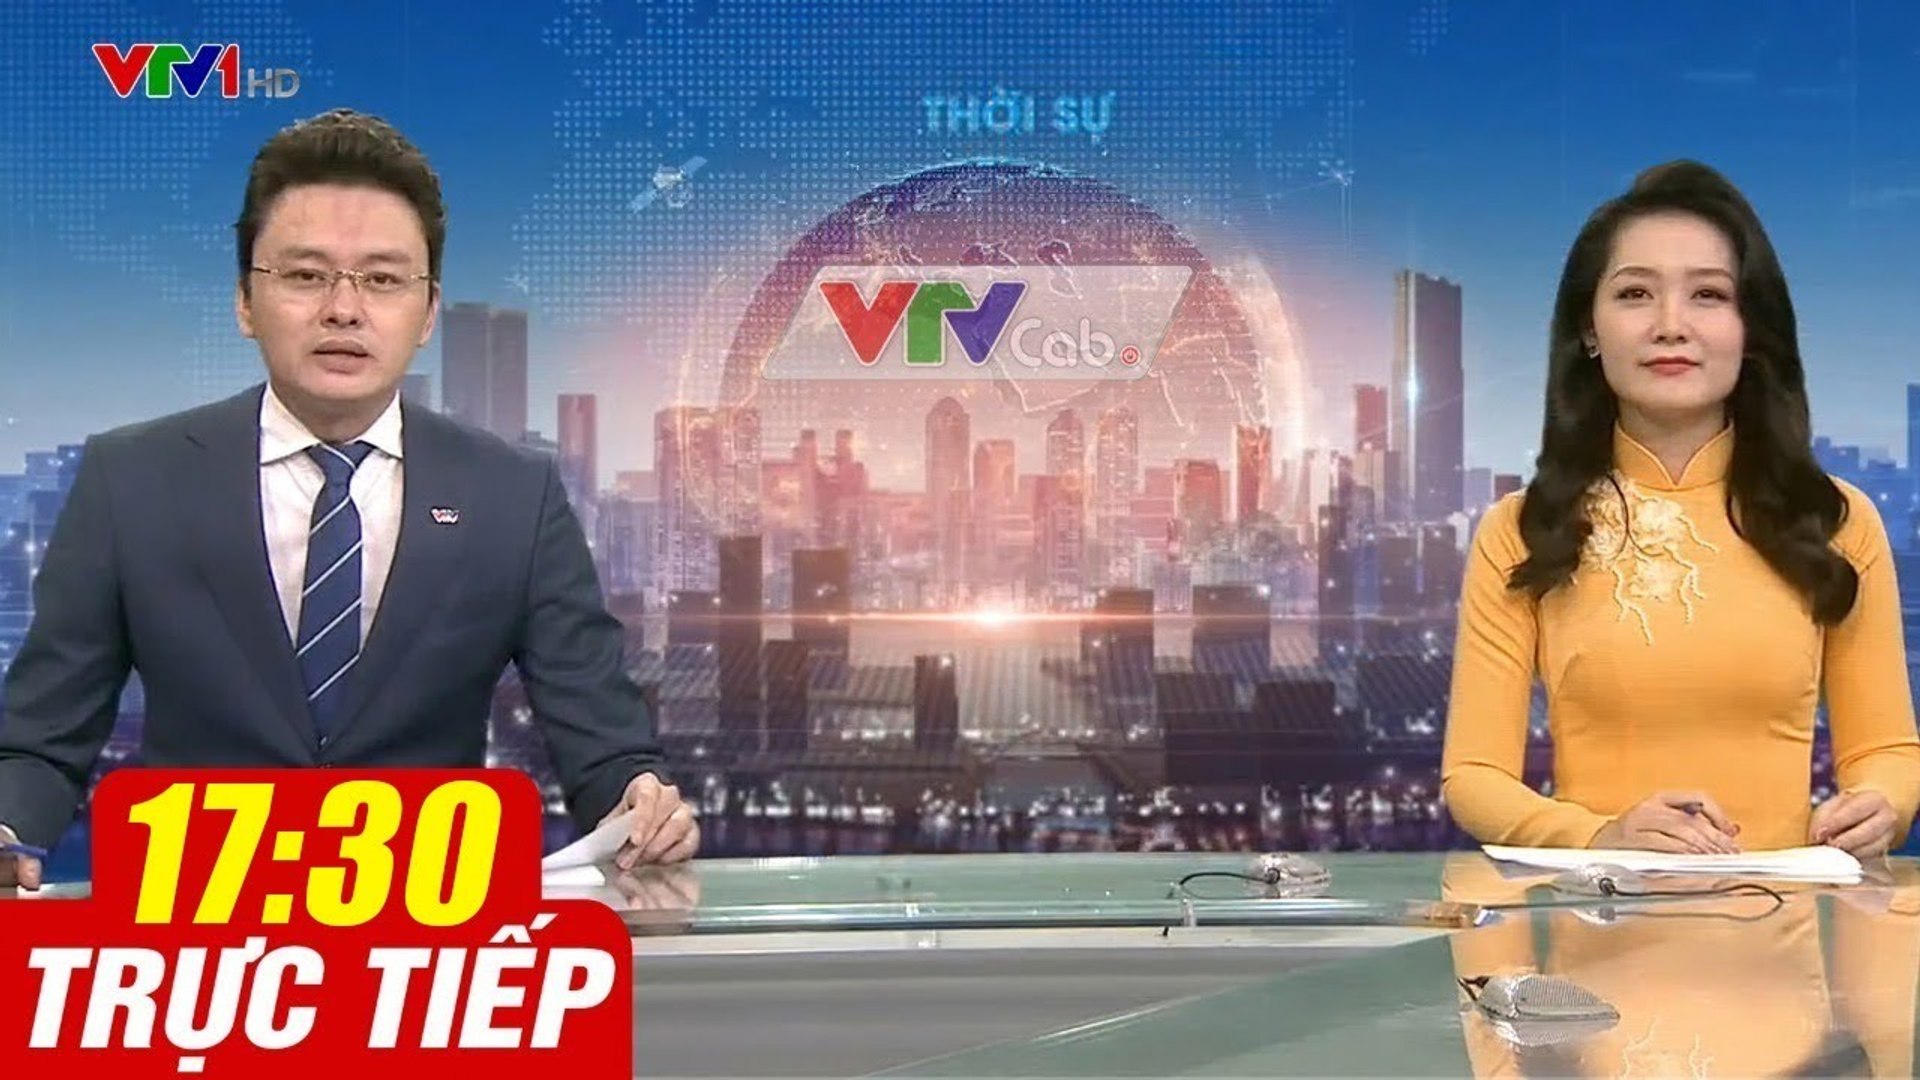 Trực Tiếp VIỆT NAM HÔM NAY 17h30 ngày 14.09.2020  Tin tức thời sự VTV1 mới nhất hôm nay